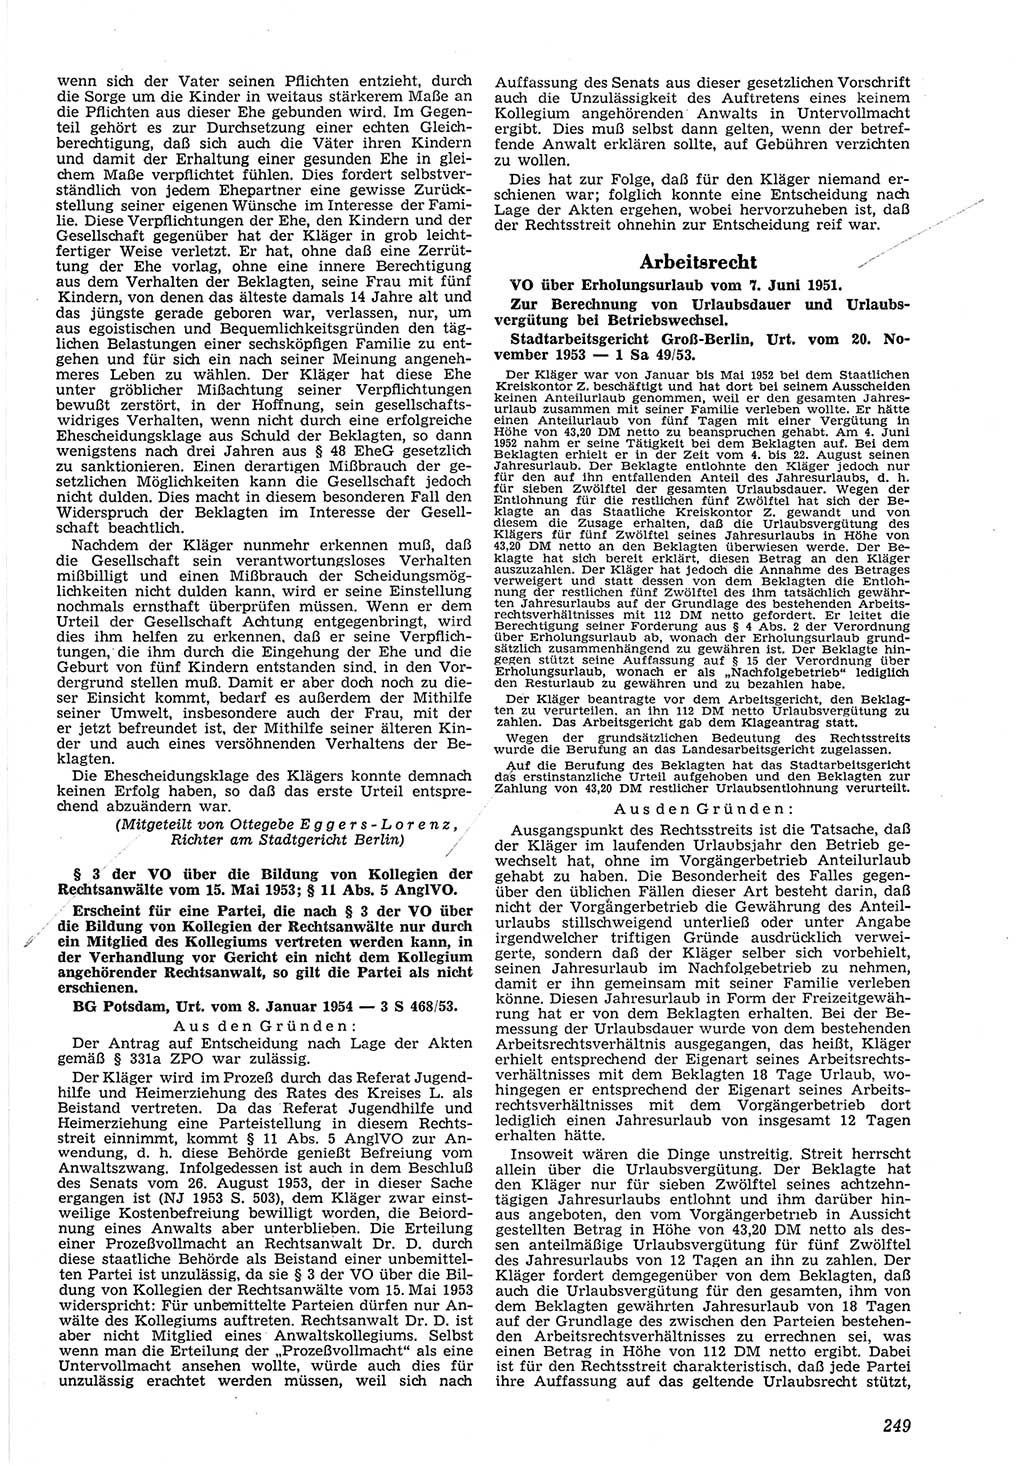 Neue Justiz (NJ), Zeitschrift für Recht und Rechtswissenschaft [Deutsche Demokratische Republik (DDR)], 8. Jahrgang 1954, Seite 249 (NJ DDR 1954, S. 249)